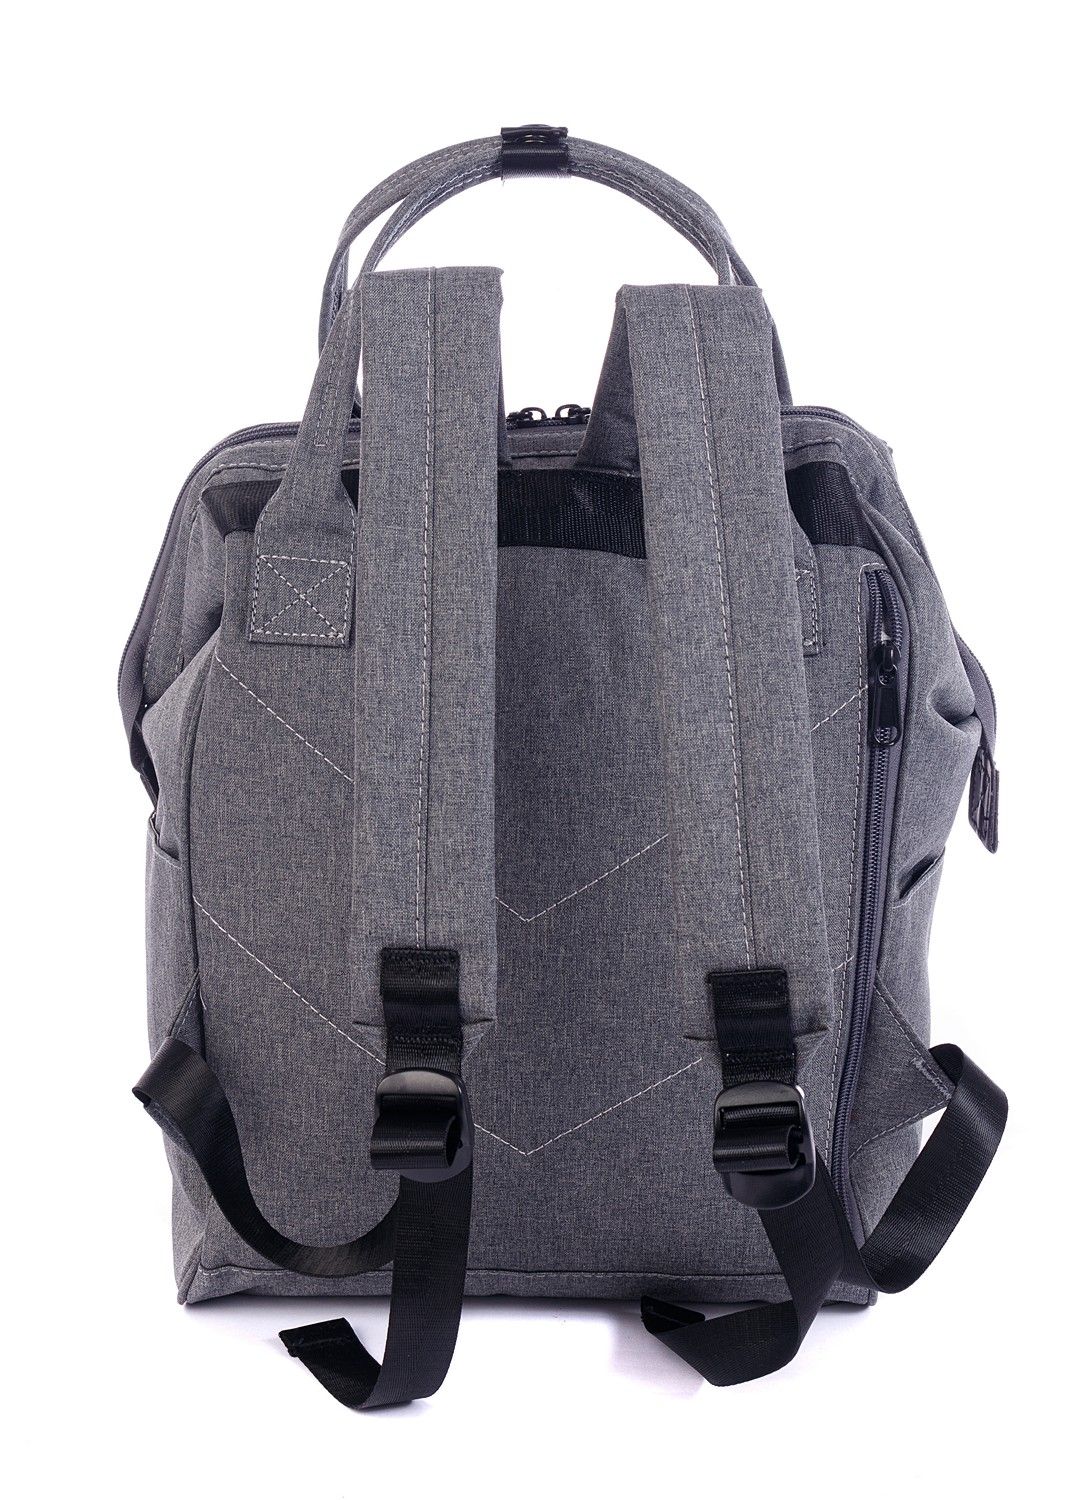 Рюкзак женский городской, серый однотонный, со стандартными лямками, объем 18 л